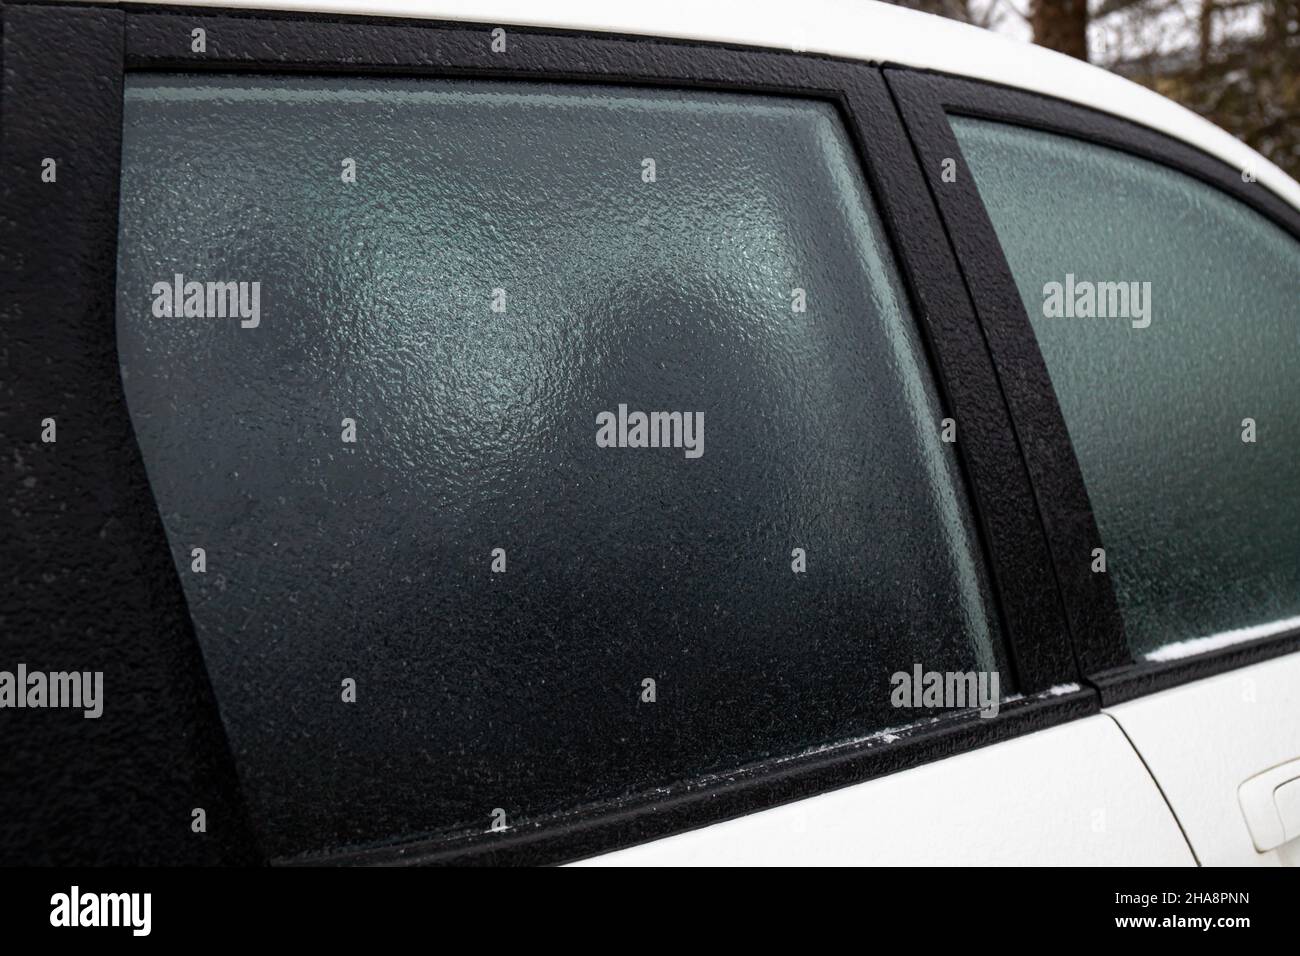 Capa de lluvia de hielo que cubre la ventana de cristal del coche en el frío día de invierno al aire libre. Concepto de condiciones climáticas extremas. Foto de stock